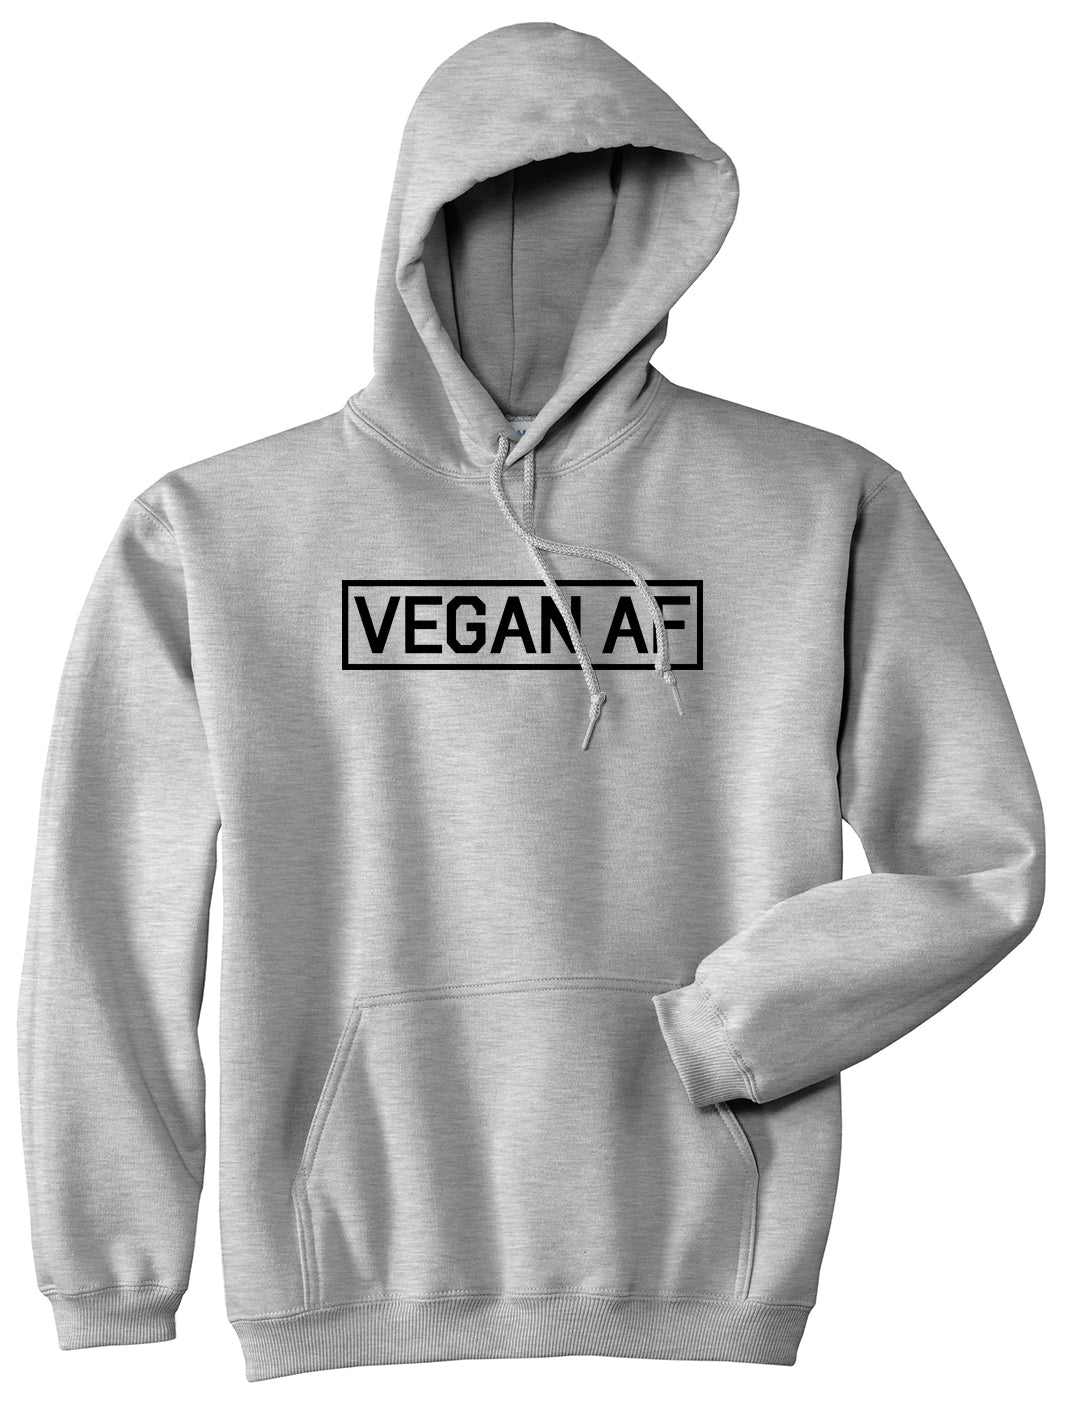 Vegan AF Vegetarian Grey Pullover Hoodie by Kings Of NY